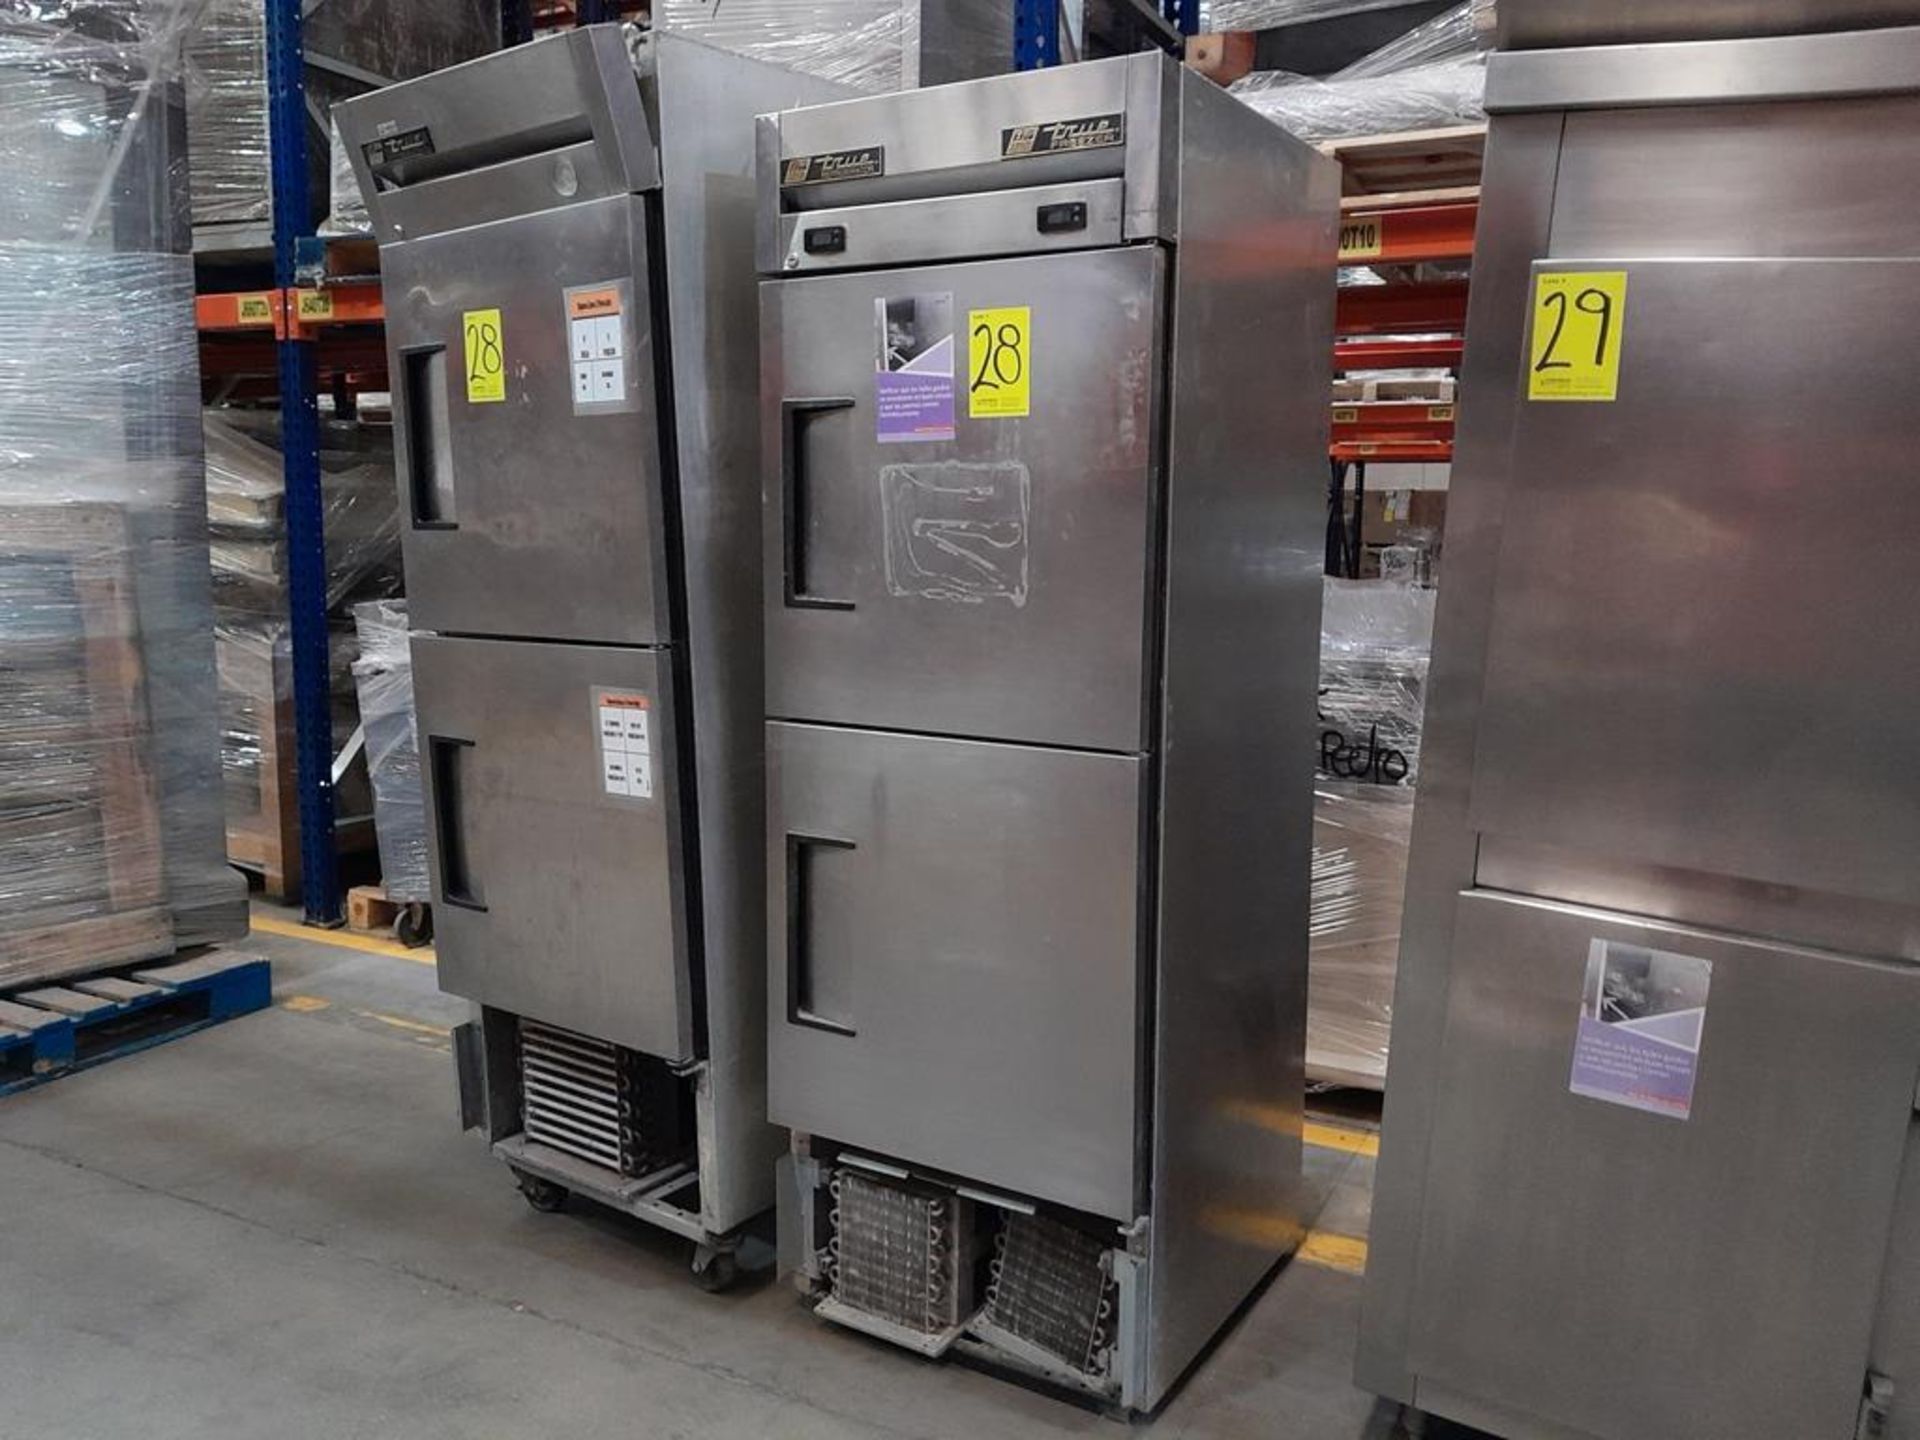 Lote de 2 refrigeradores: 1 Refrigerador en acero inoxidable de dos puertas, Marca TRUE FREEZER, Mo - Image 2 of 6